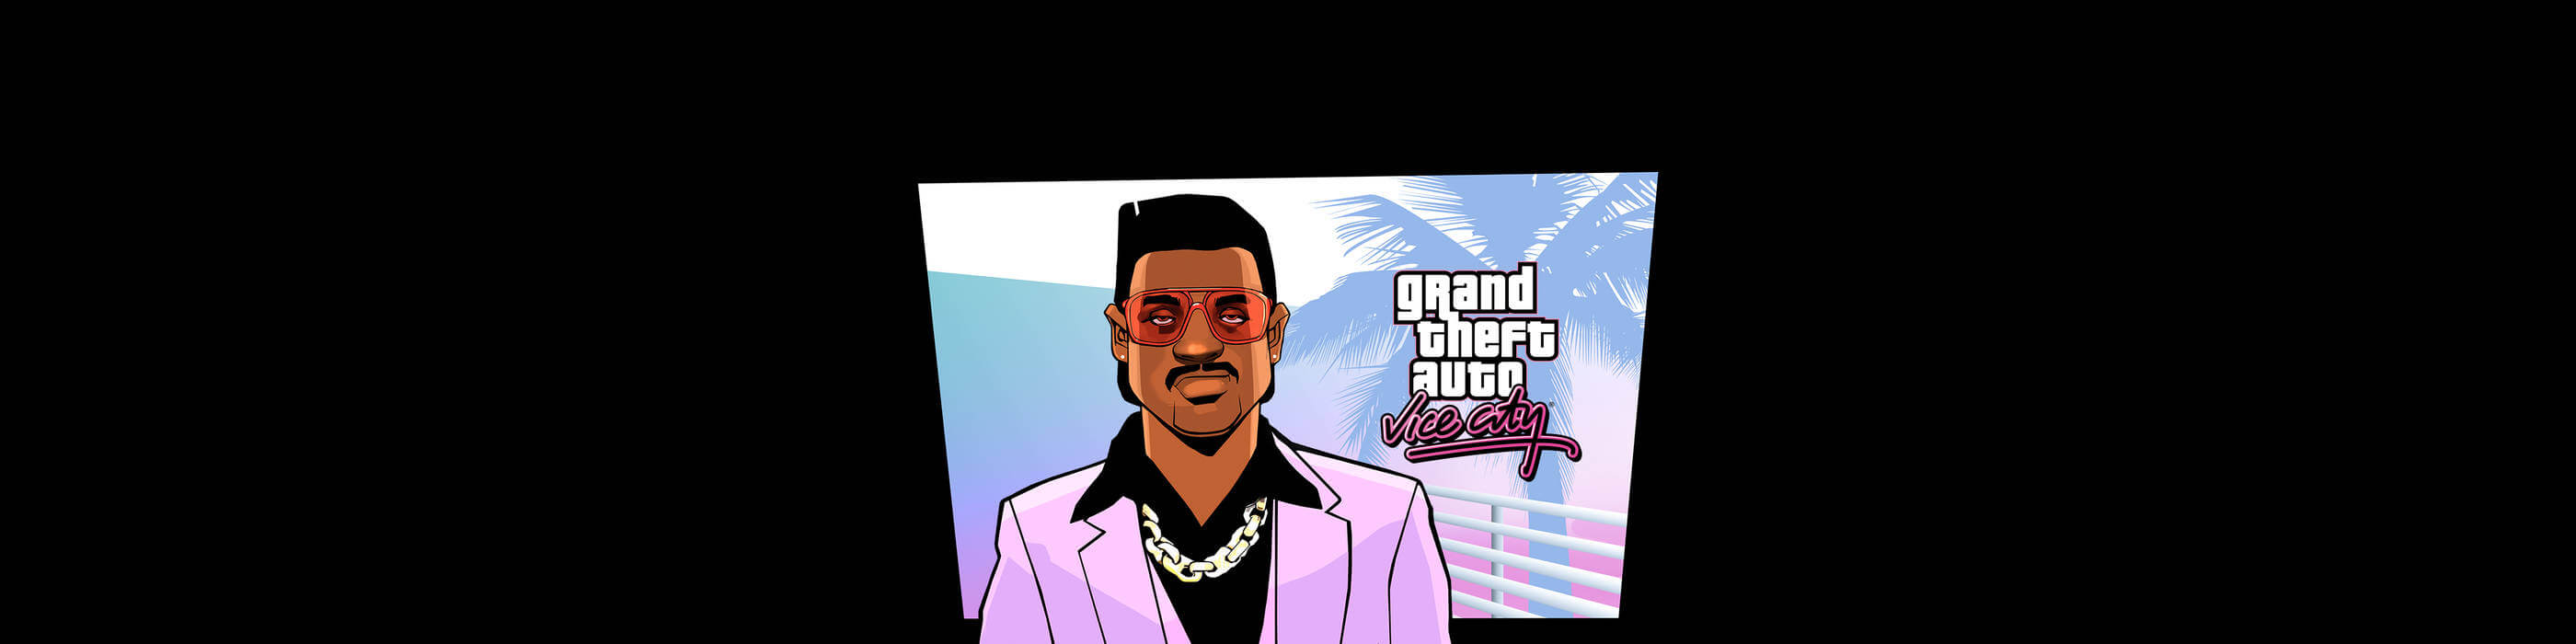 [已购]Grand Theft Auto: Vice City-草蜢资源